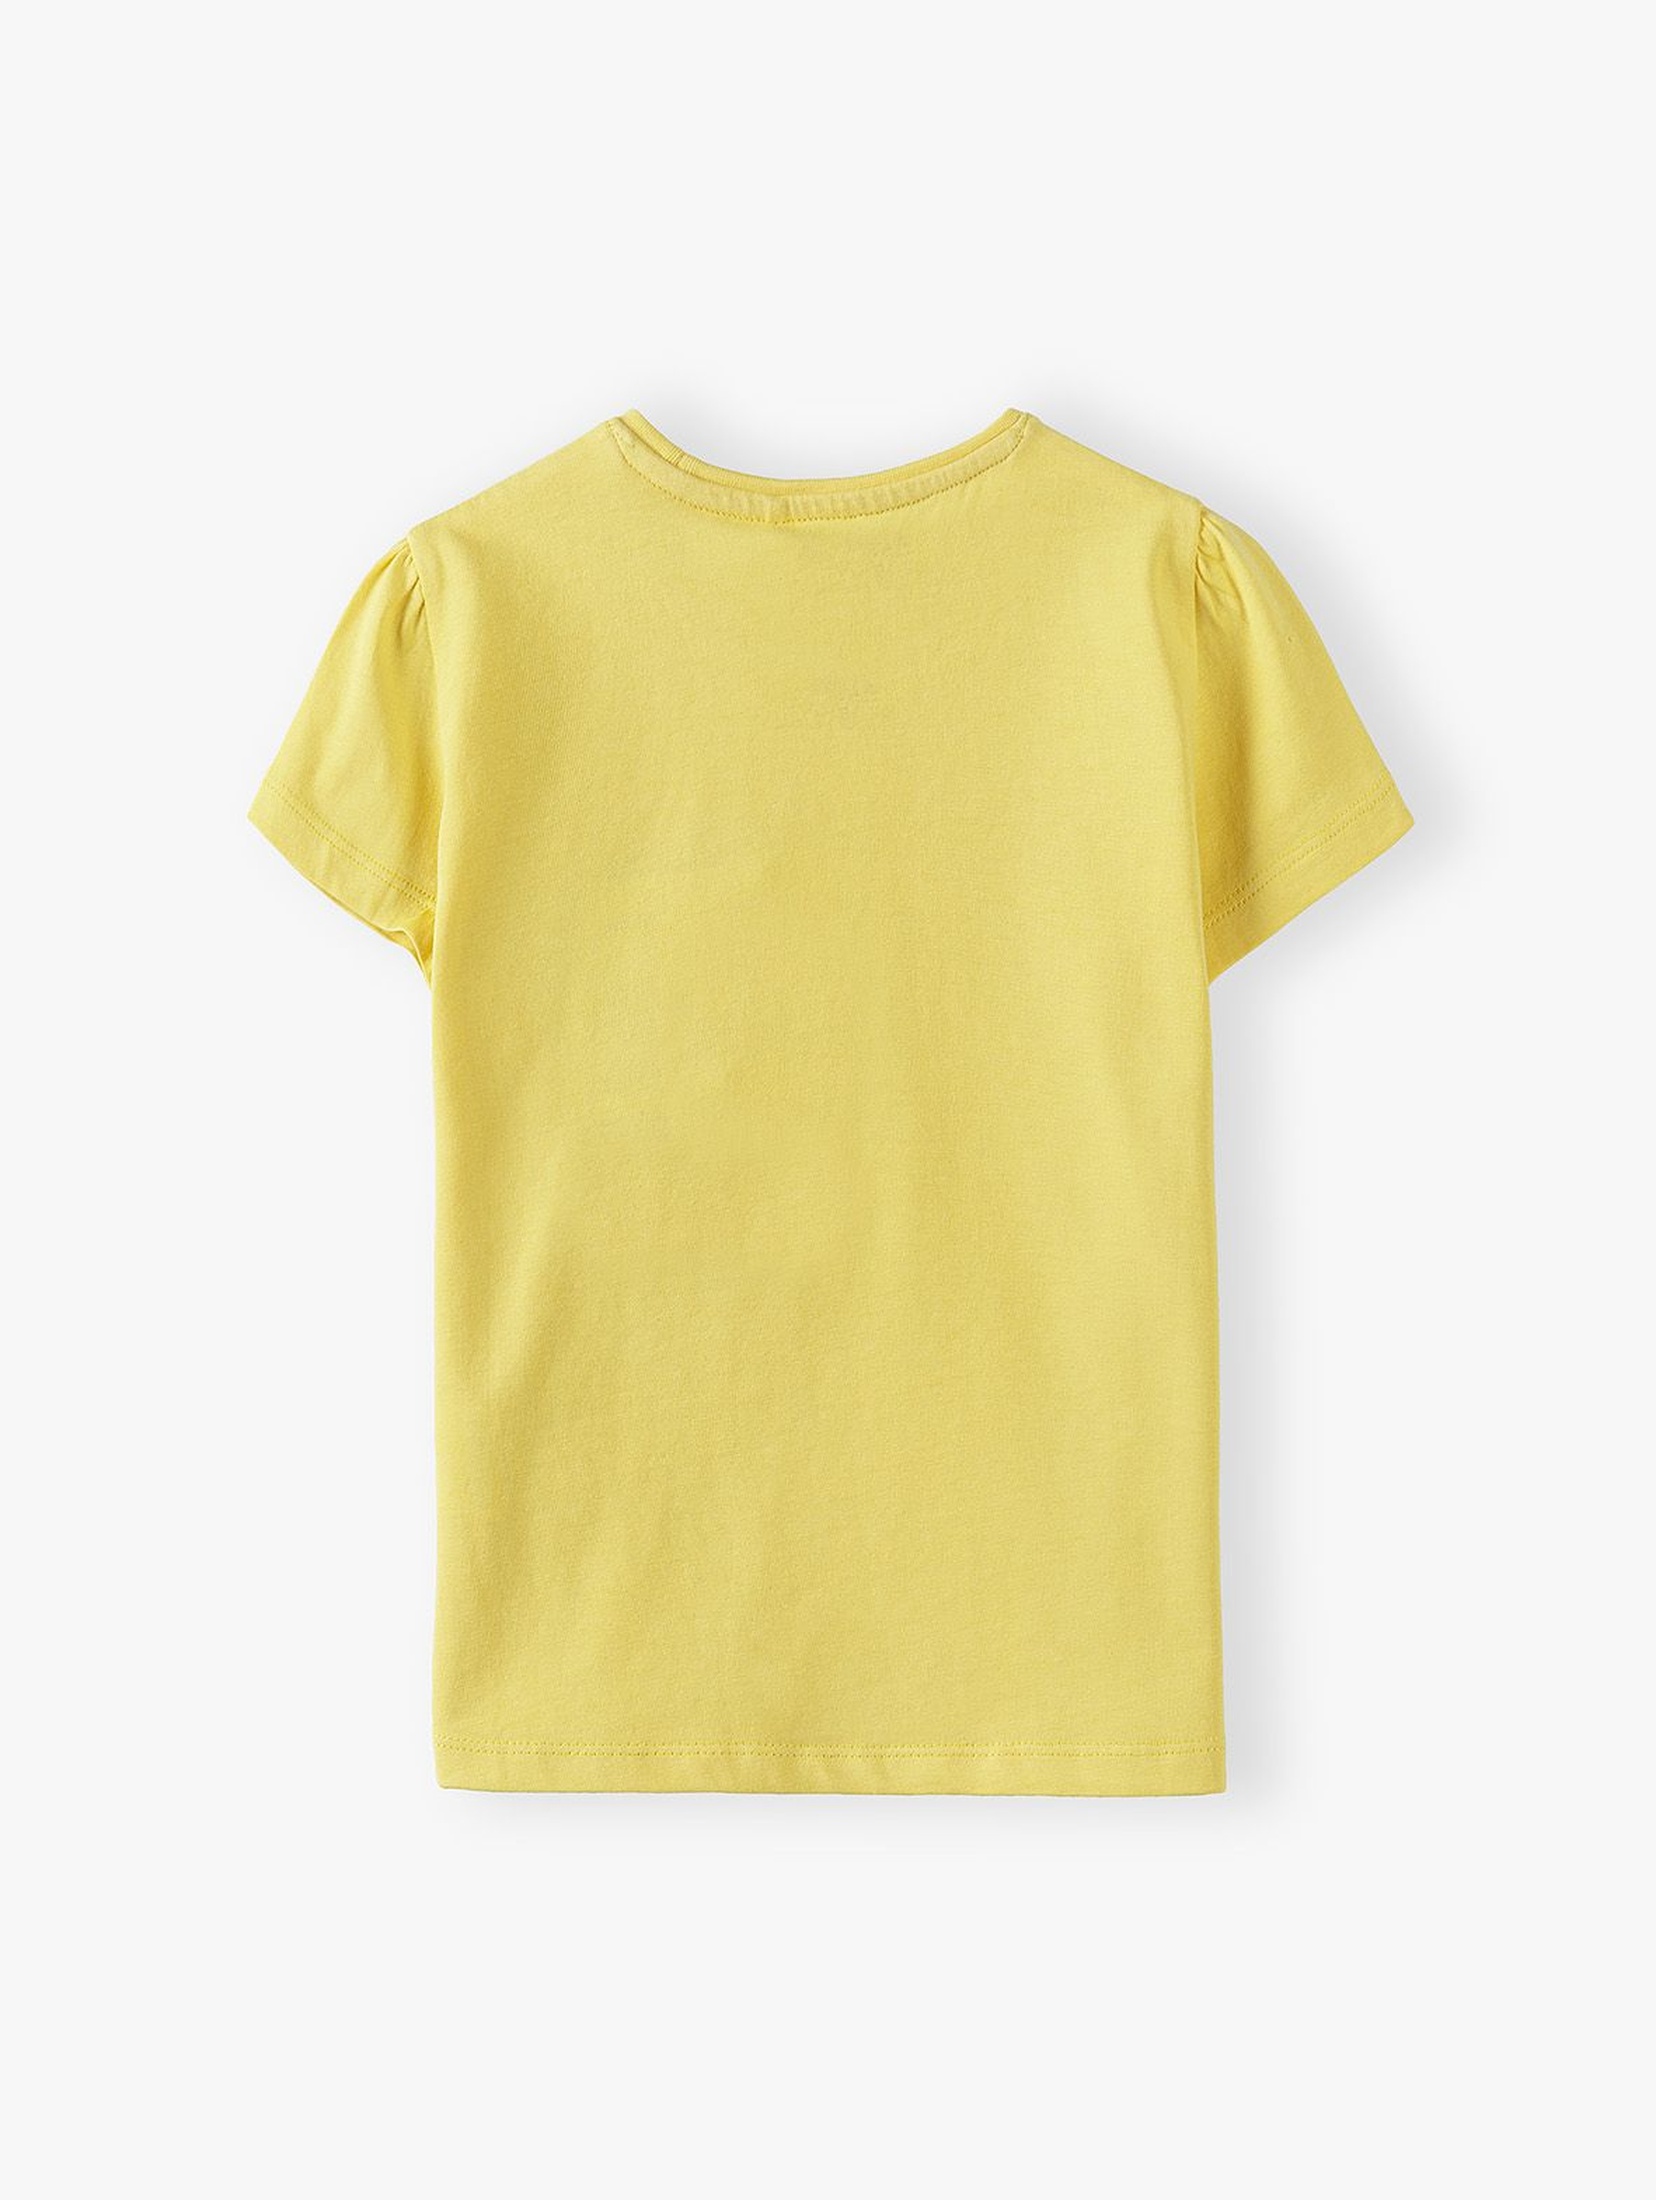 Bawełniany żółty t-shirt dziewczęcy z listkami